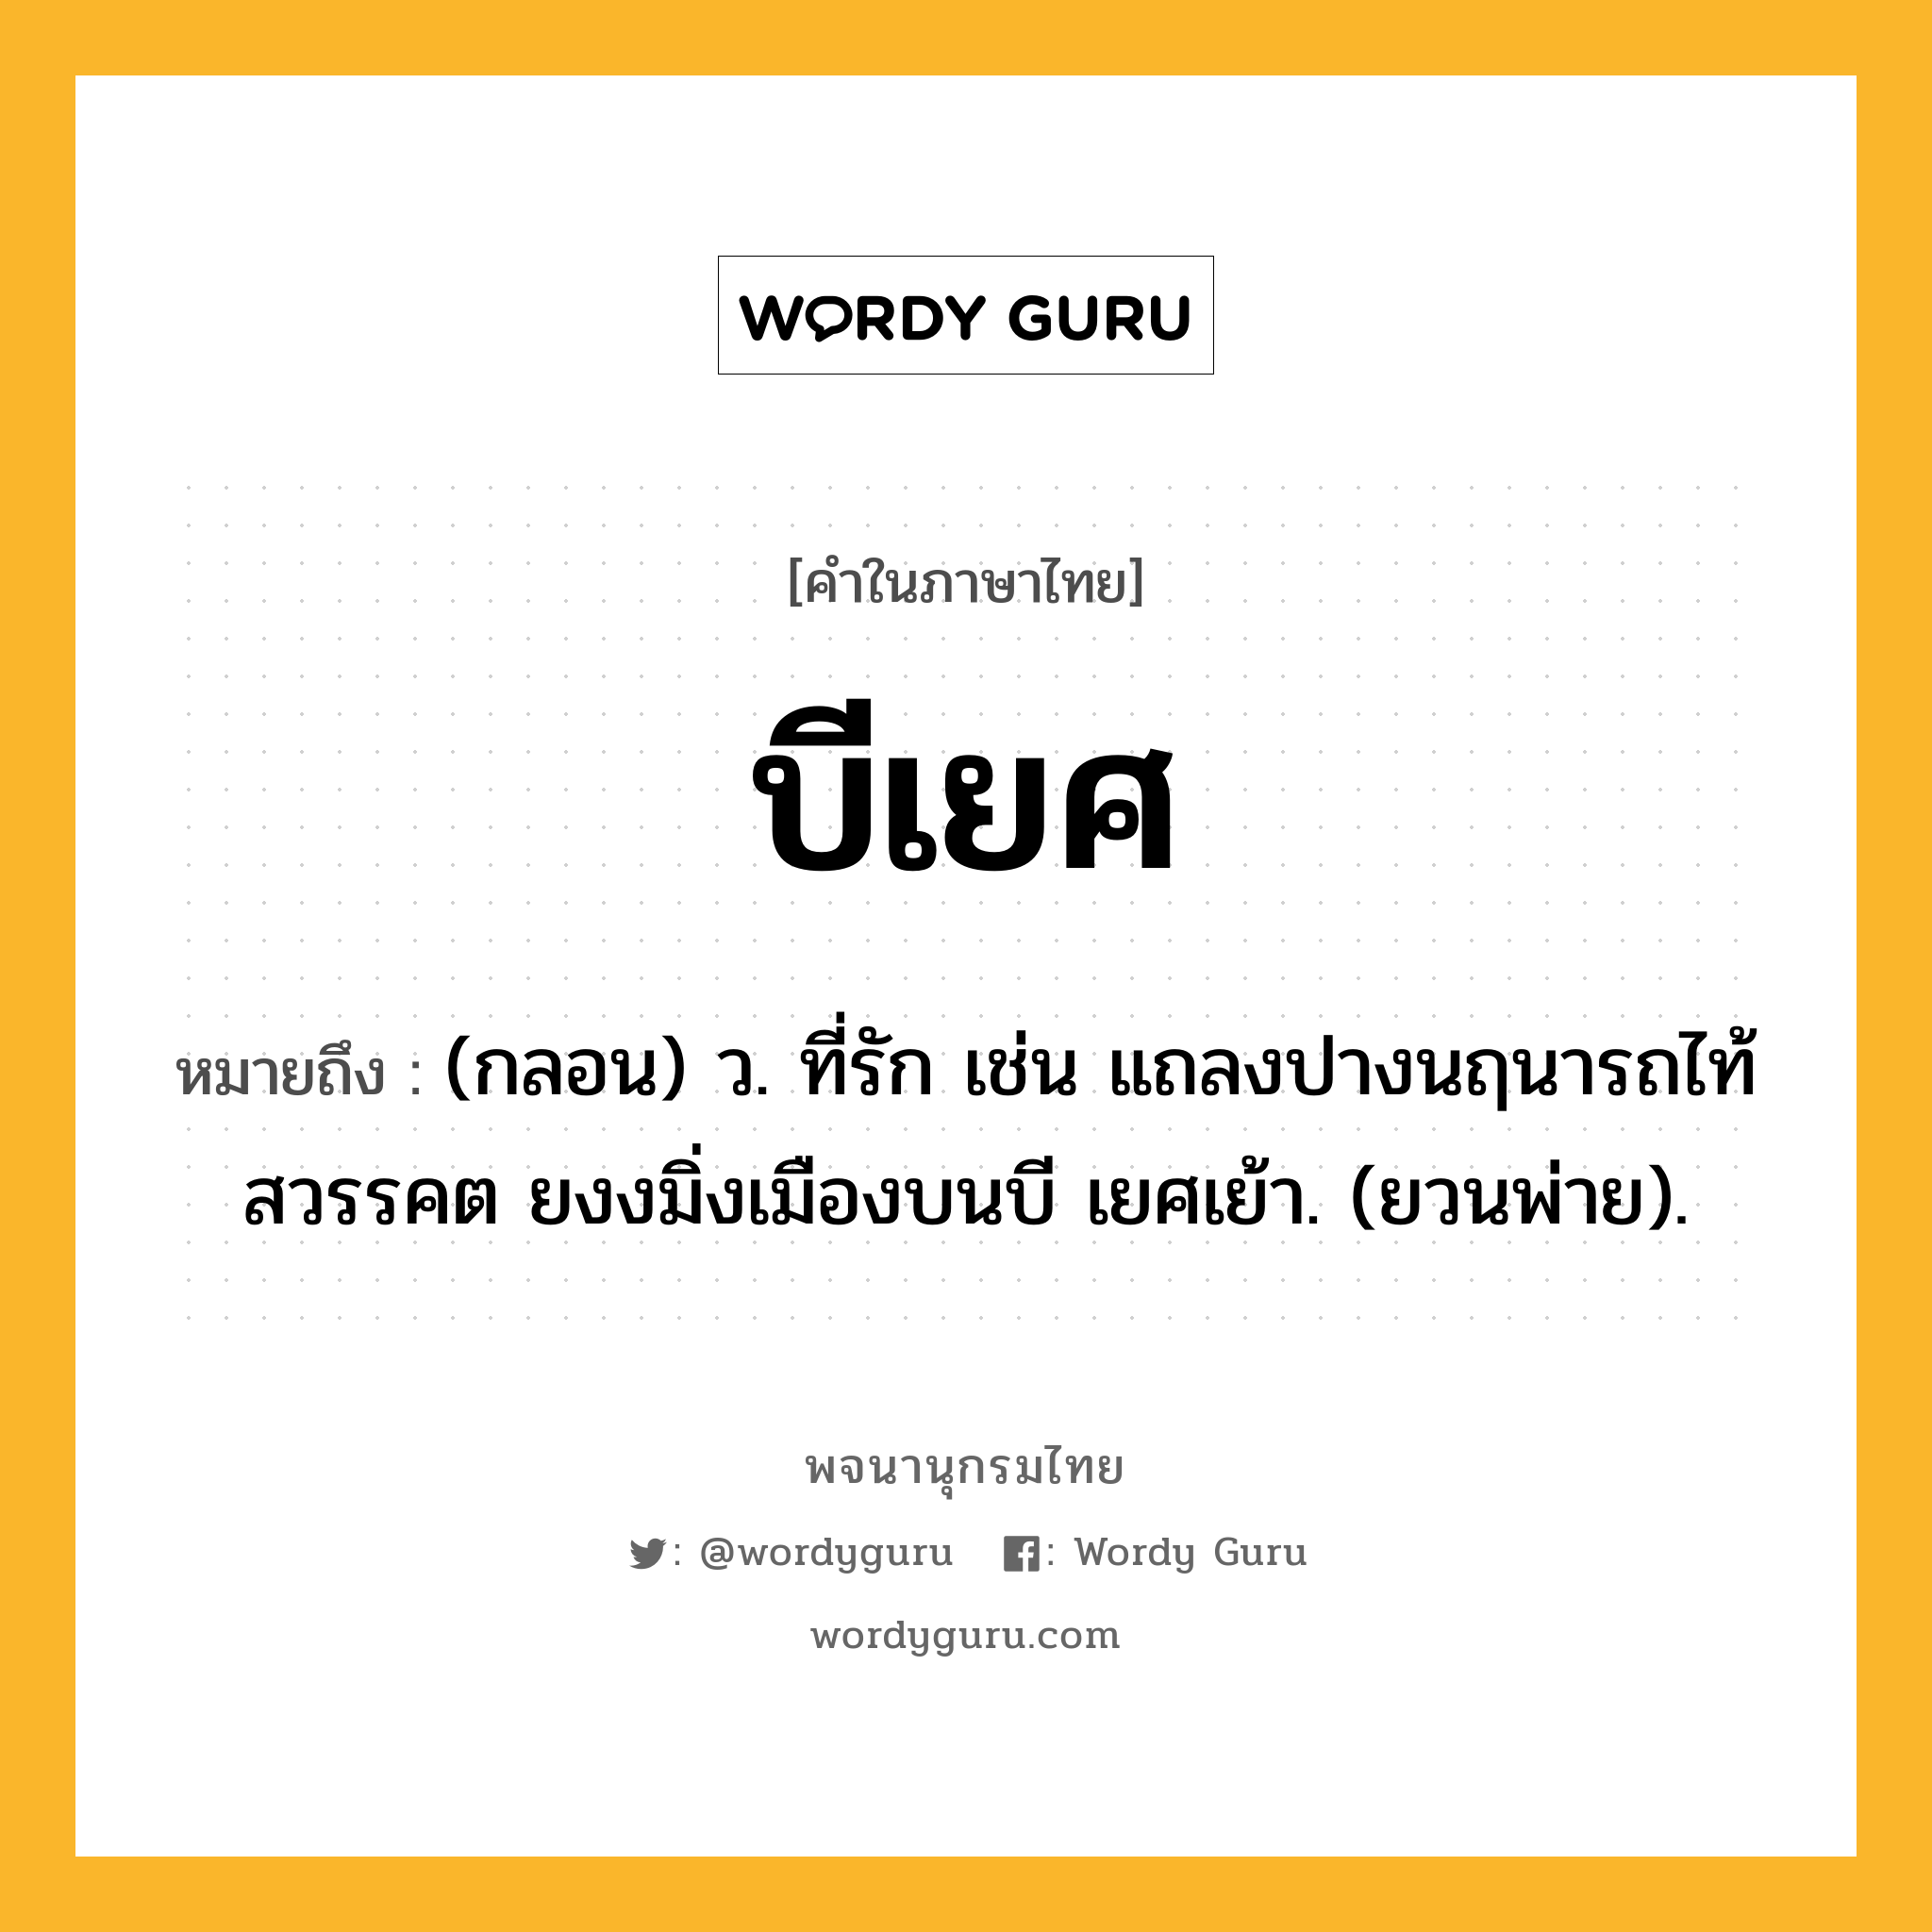 บีเยศ ความหมาย หมายถึงอะไร?, คำในภาษาไทย บีเยศ หมายถึง (กลอน) ว. ที่รัก เช่น แถลงปางนฤนารถไท้สวรรคต ยงงมิ่งเมืองบนบี เยศเย้า. (ยวนพ่าย).